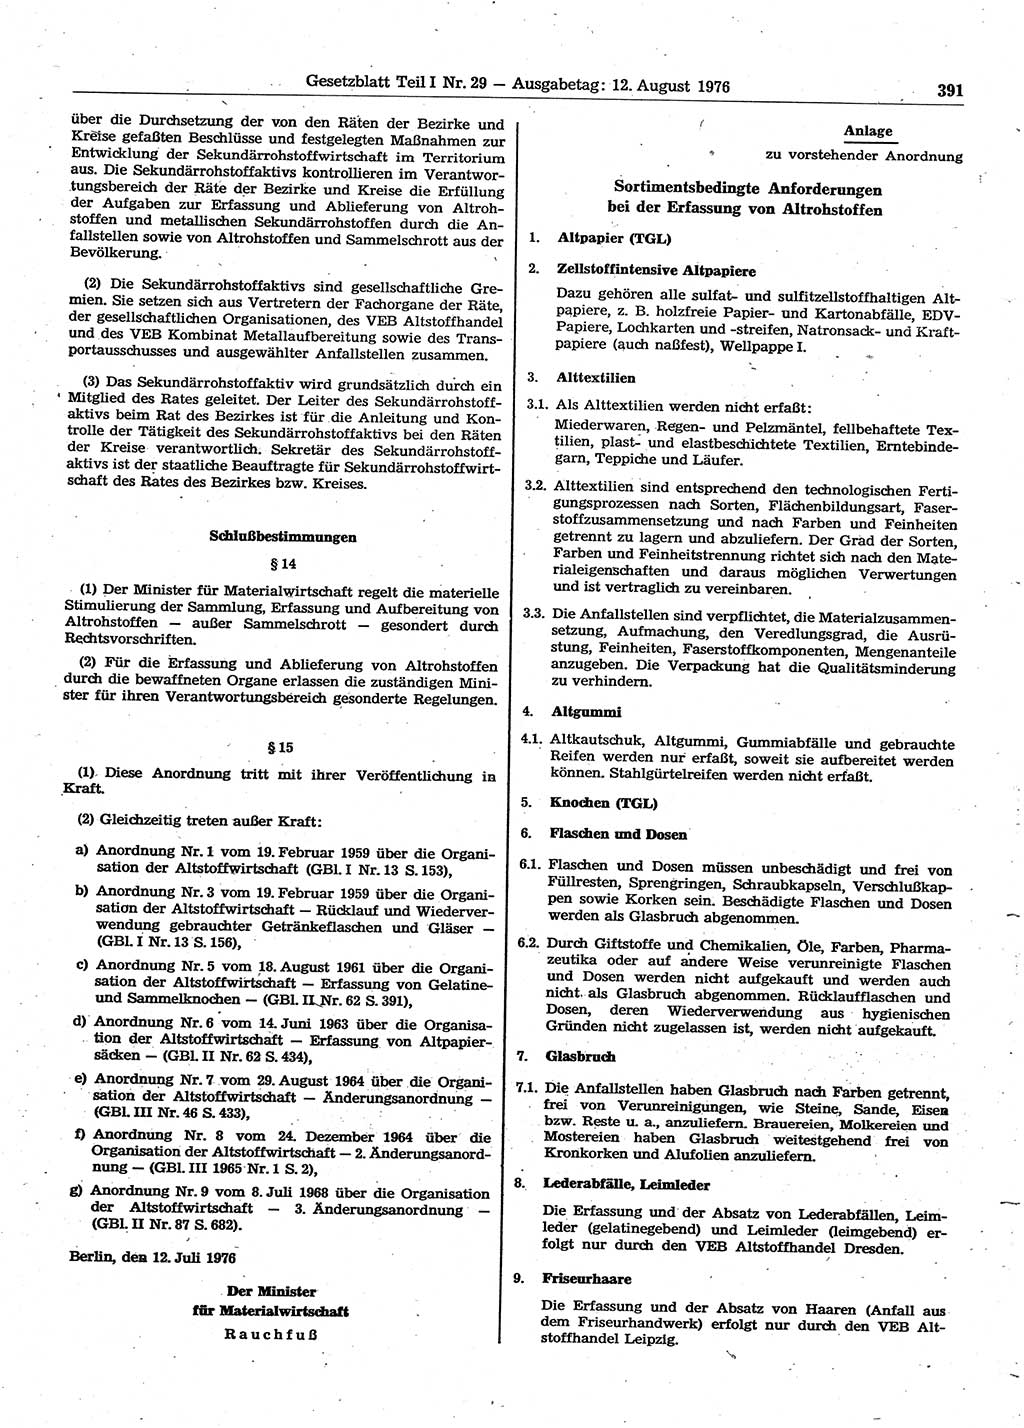 Gesetzblatt (GBl.) der Deutschen Demokratischen Republik (DDR) Teil Ⅰ 1976, Seite 391 (GBl. DDR Ⅰ 1976, S. 391)